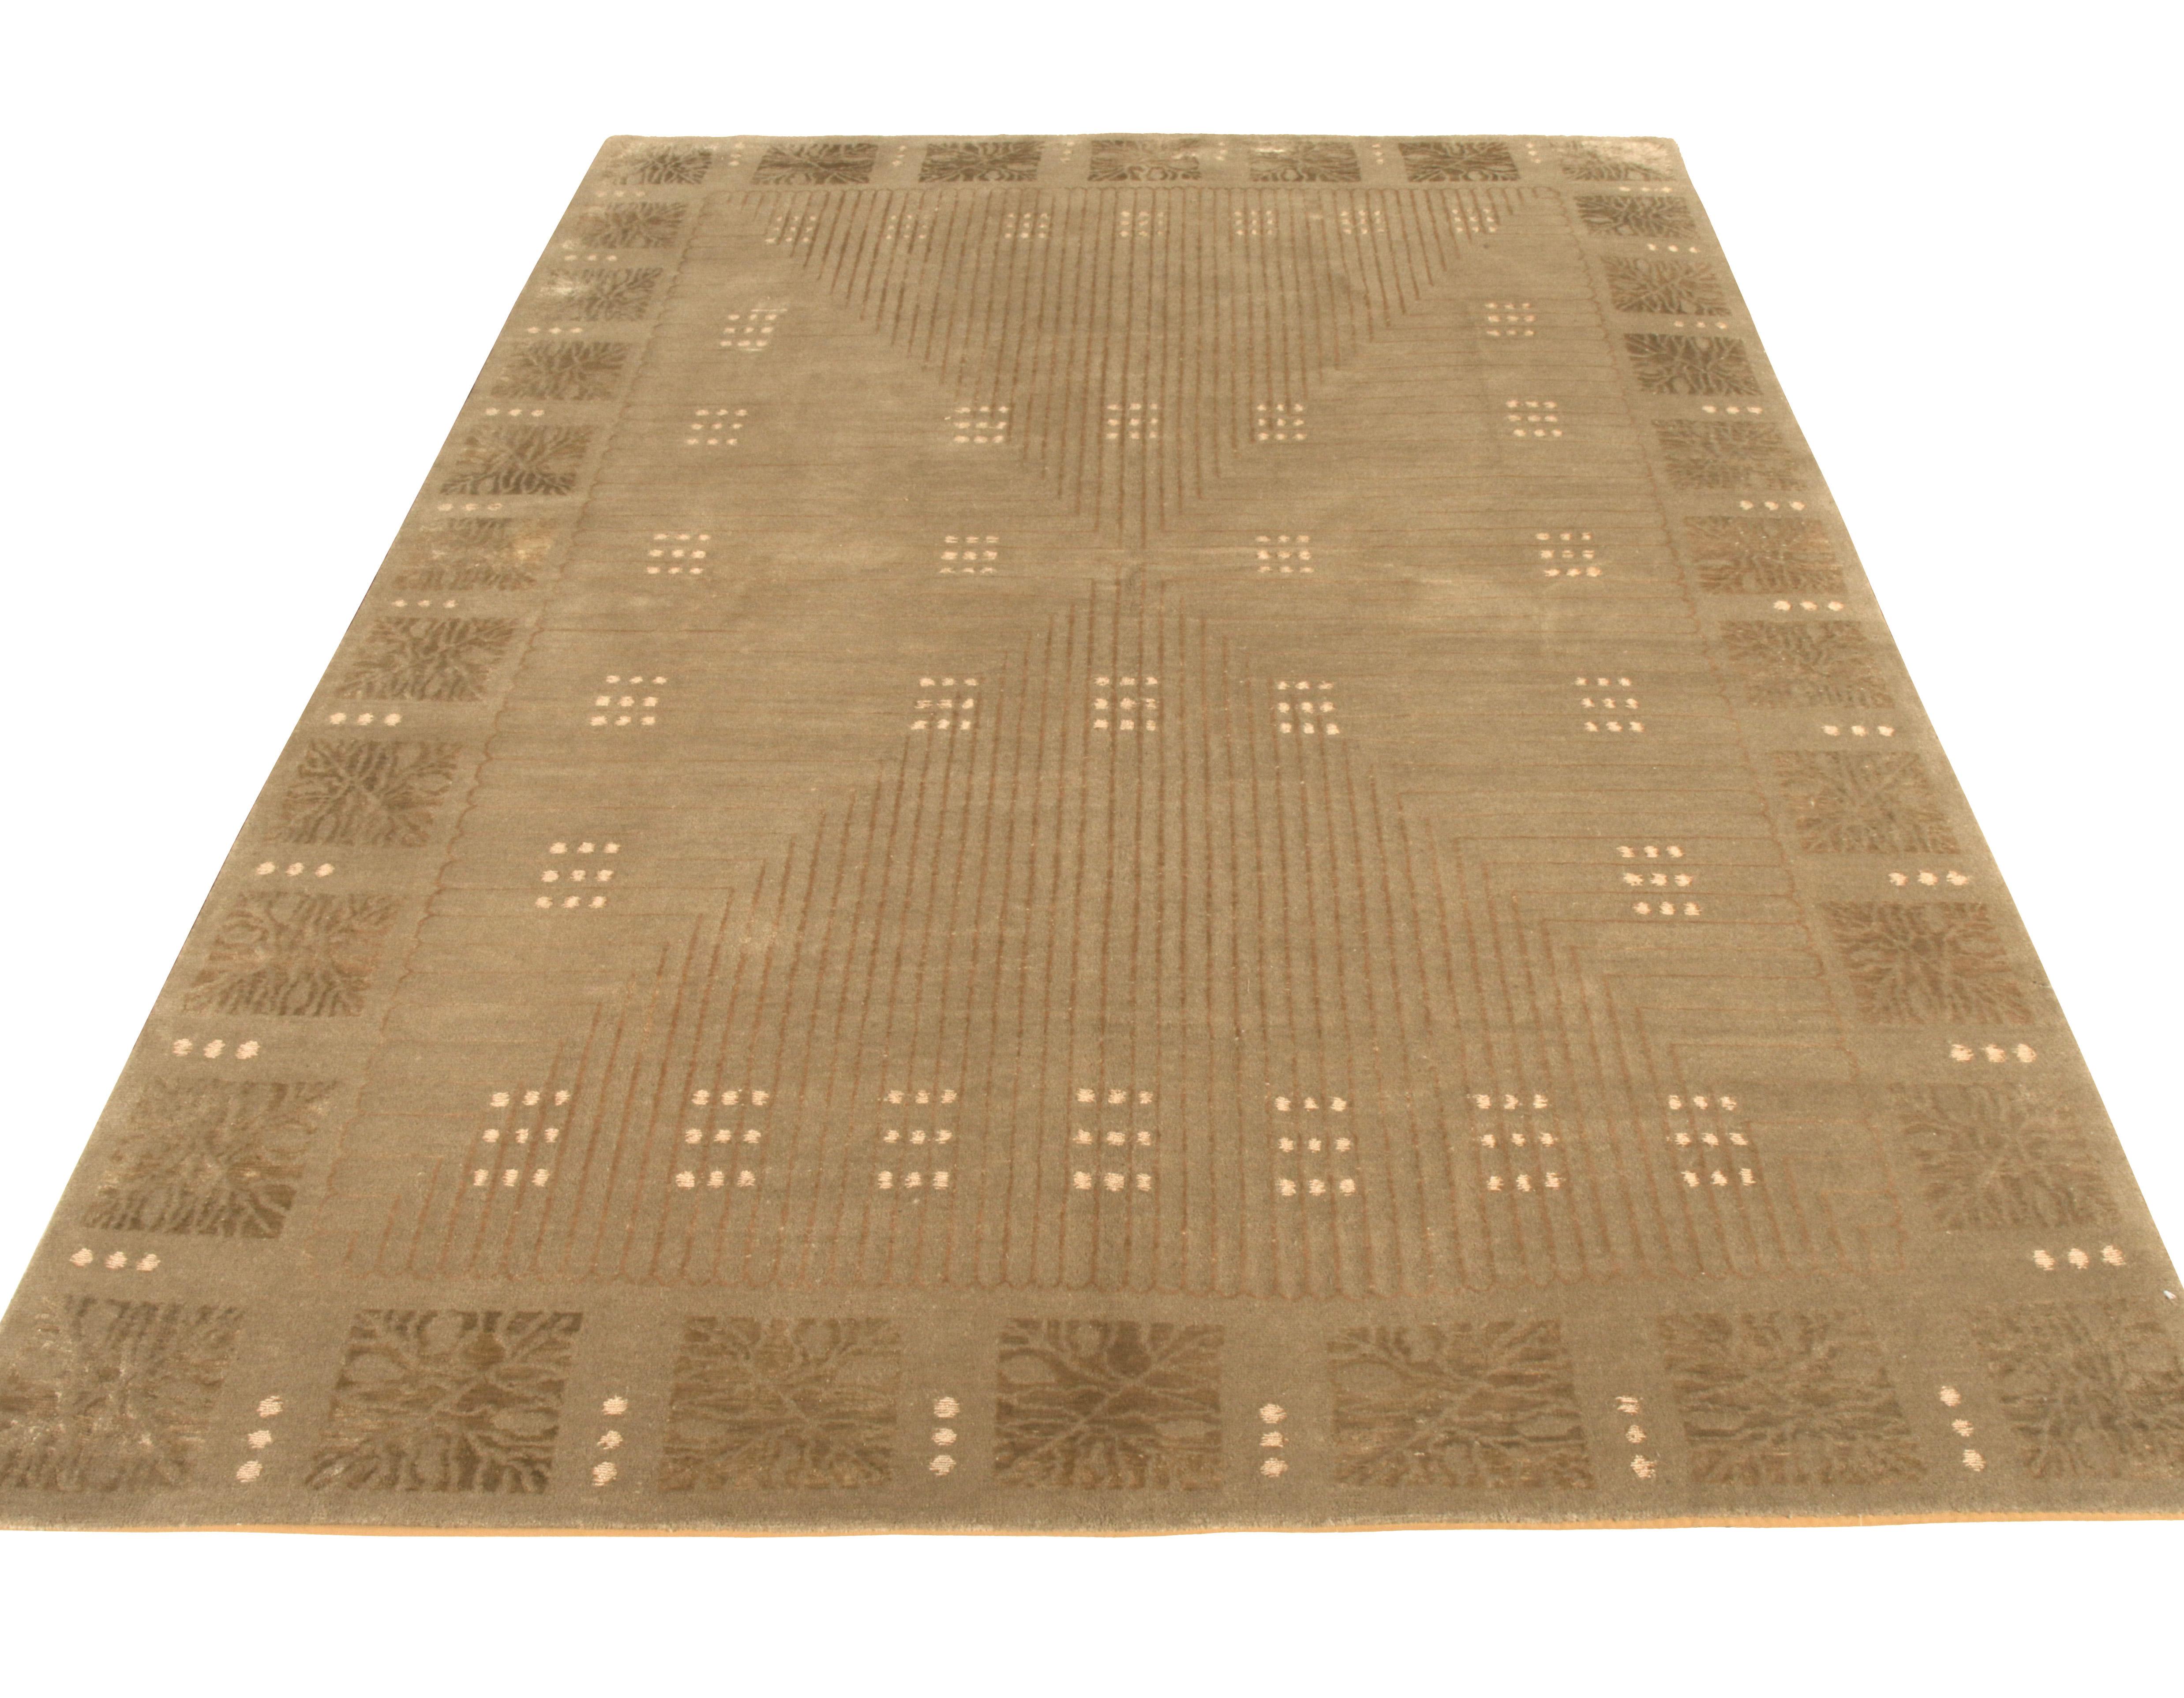 Une ode spacieuse de 6 x 9 aux styles de tapis Art déco autrichiens, qui entre dans la Collection européenne de Rug & Kilim. Le mélange luxueux de laine et de soie donne un lustre lisse qui se marie naturellement avec les tons subtils de beige-brun